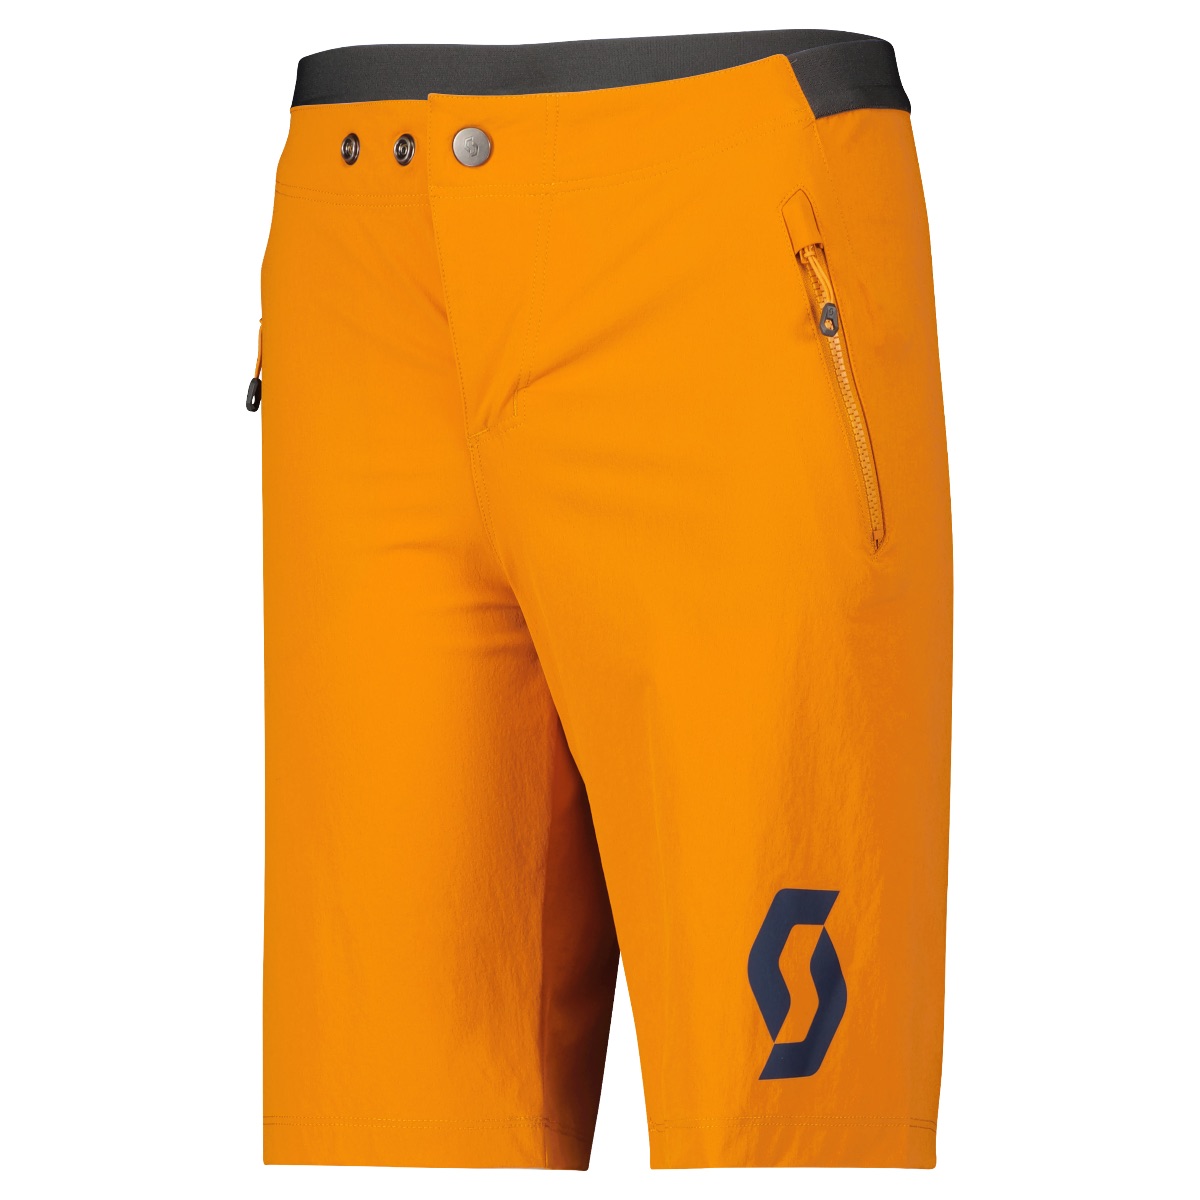 Kid's mtn b orange shorts by SCOTT